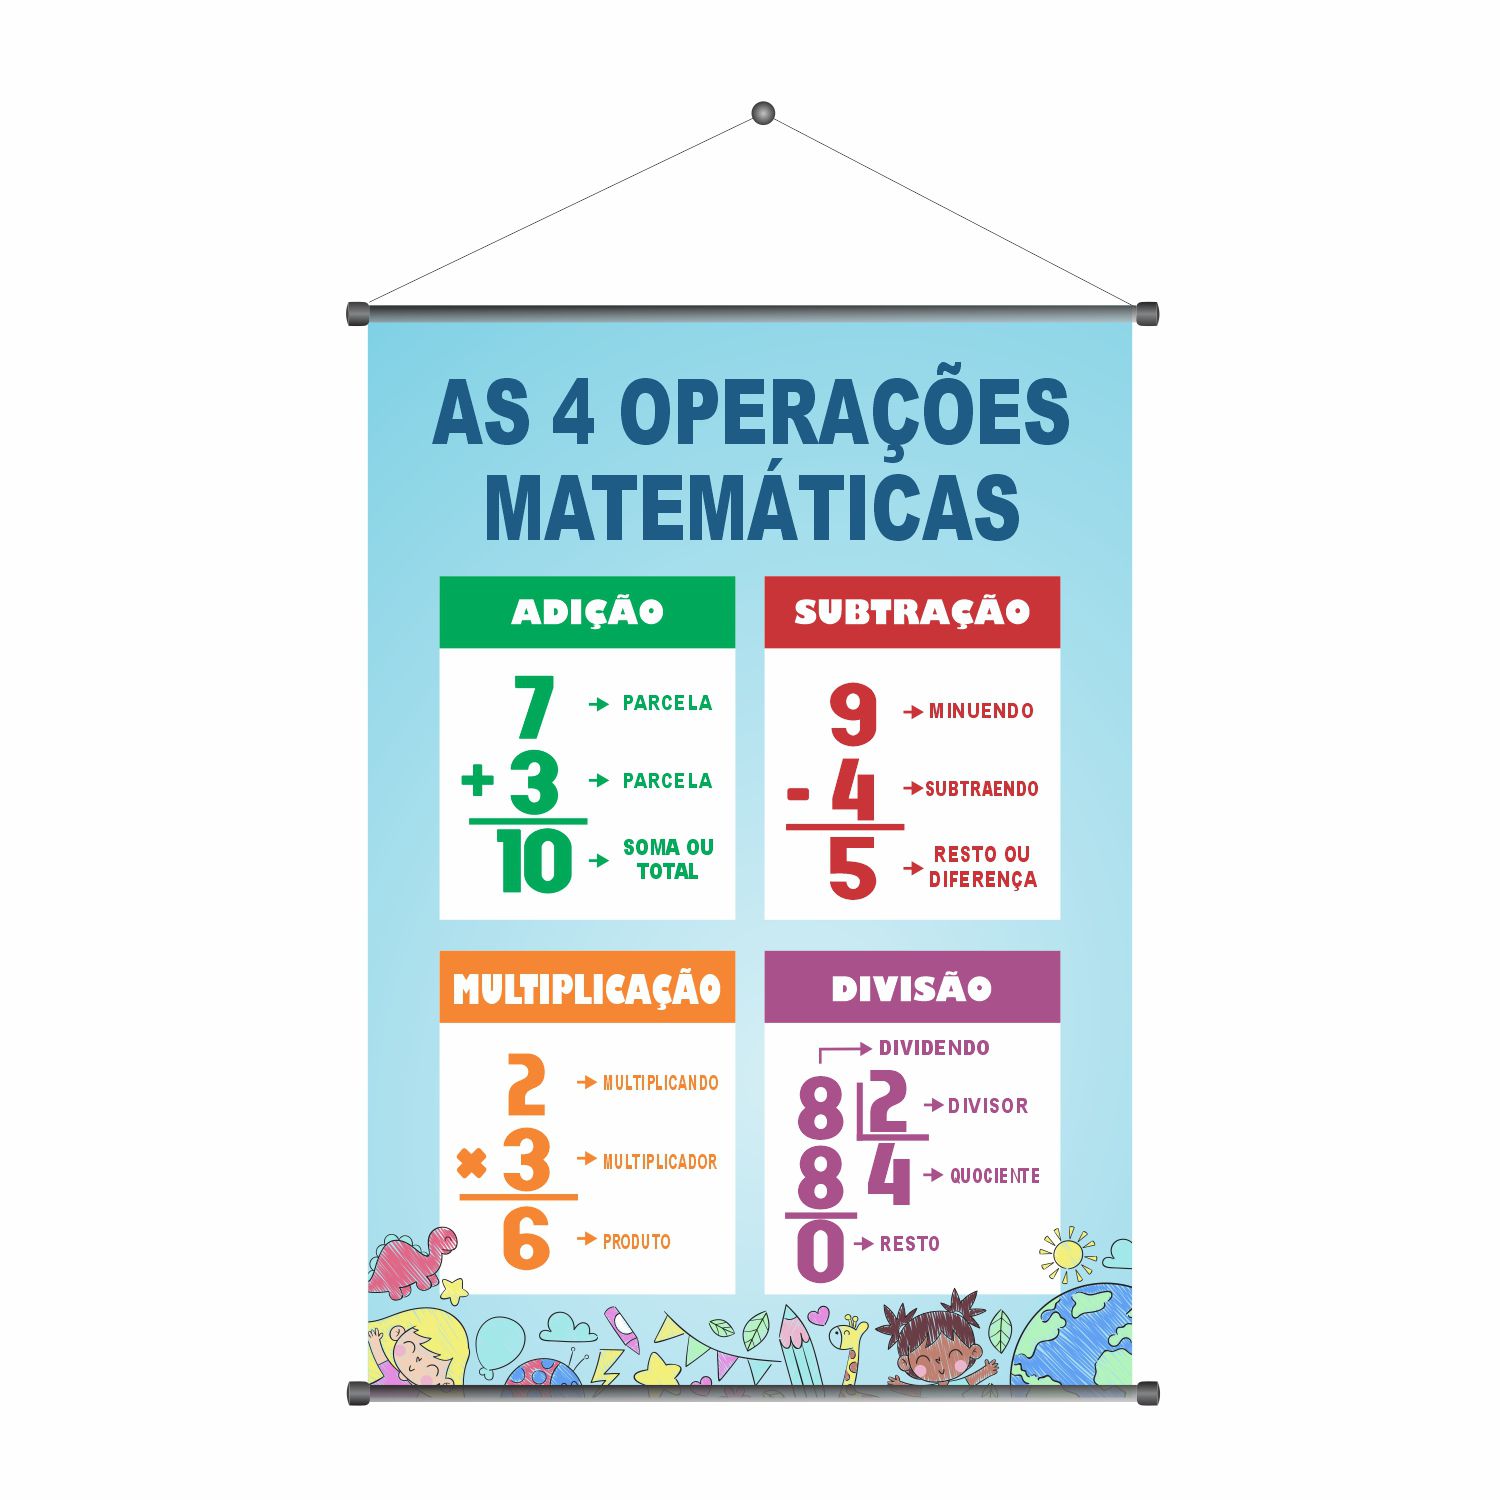 As 4 operações matemáticas